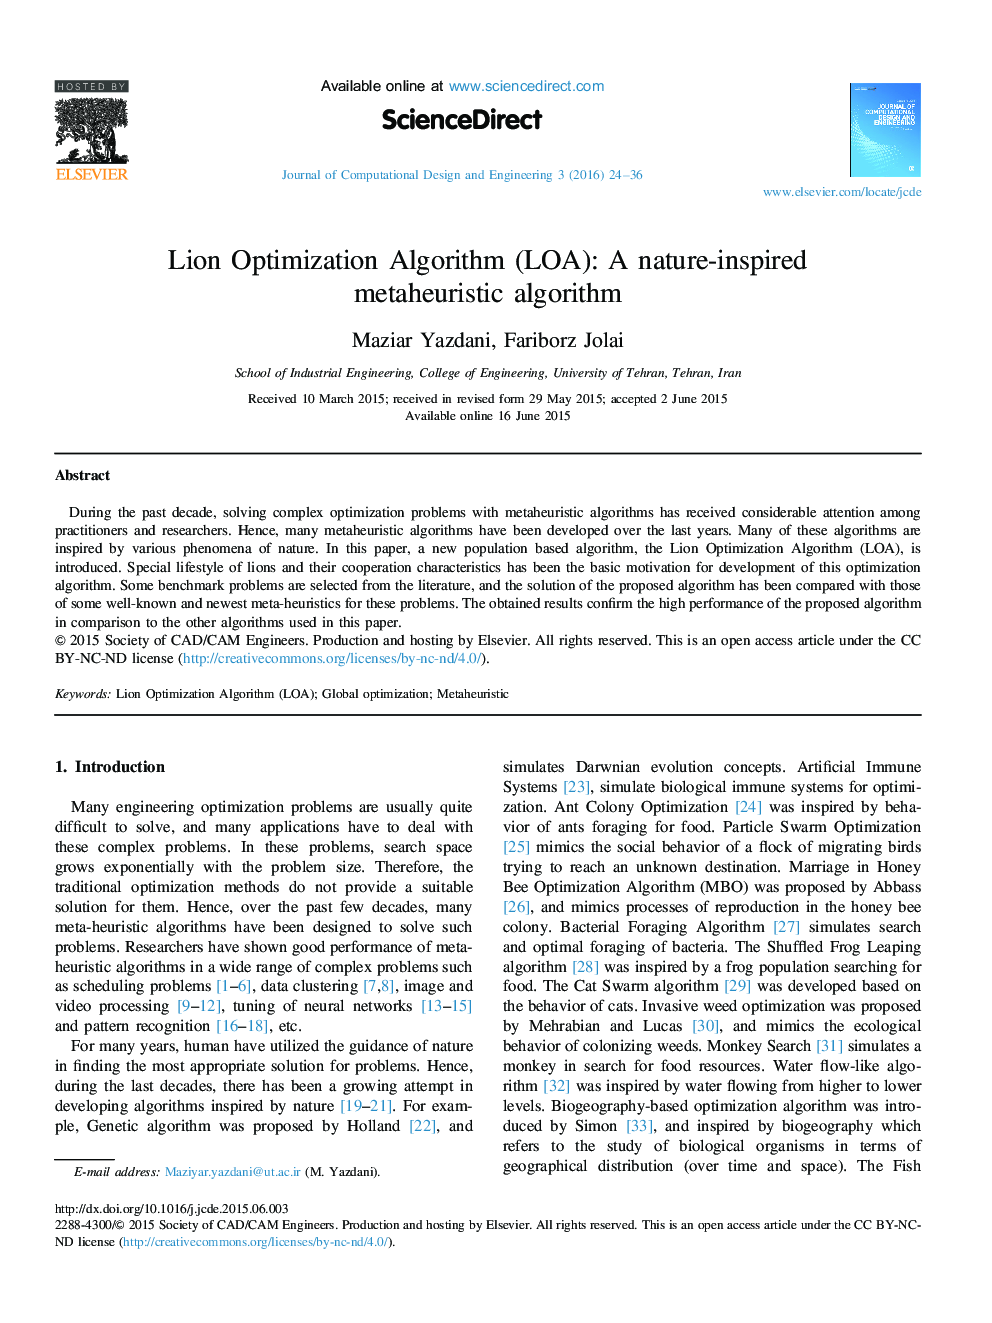 Lion Optimization Algorithm (LOA): A nature-inspired metaheuristic algorithm